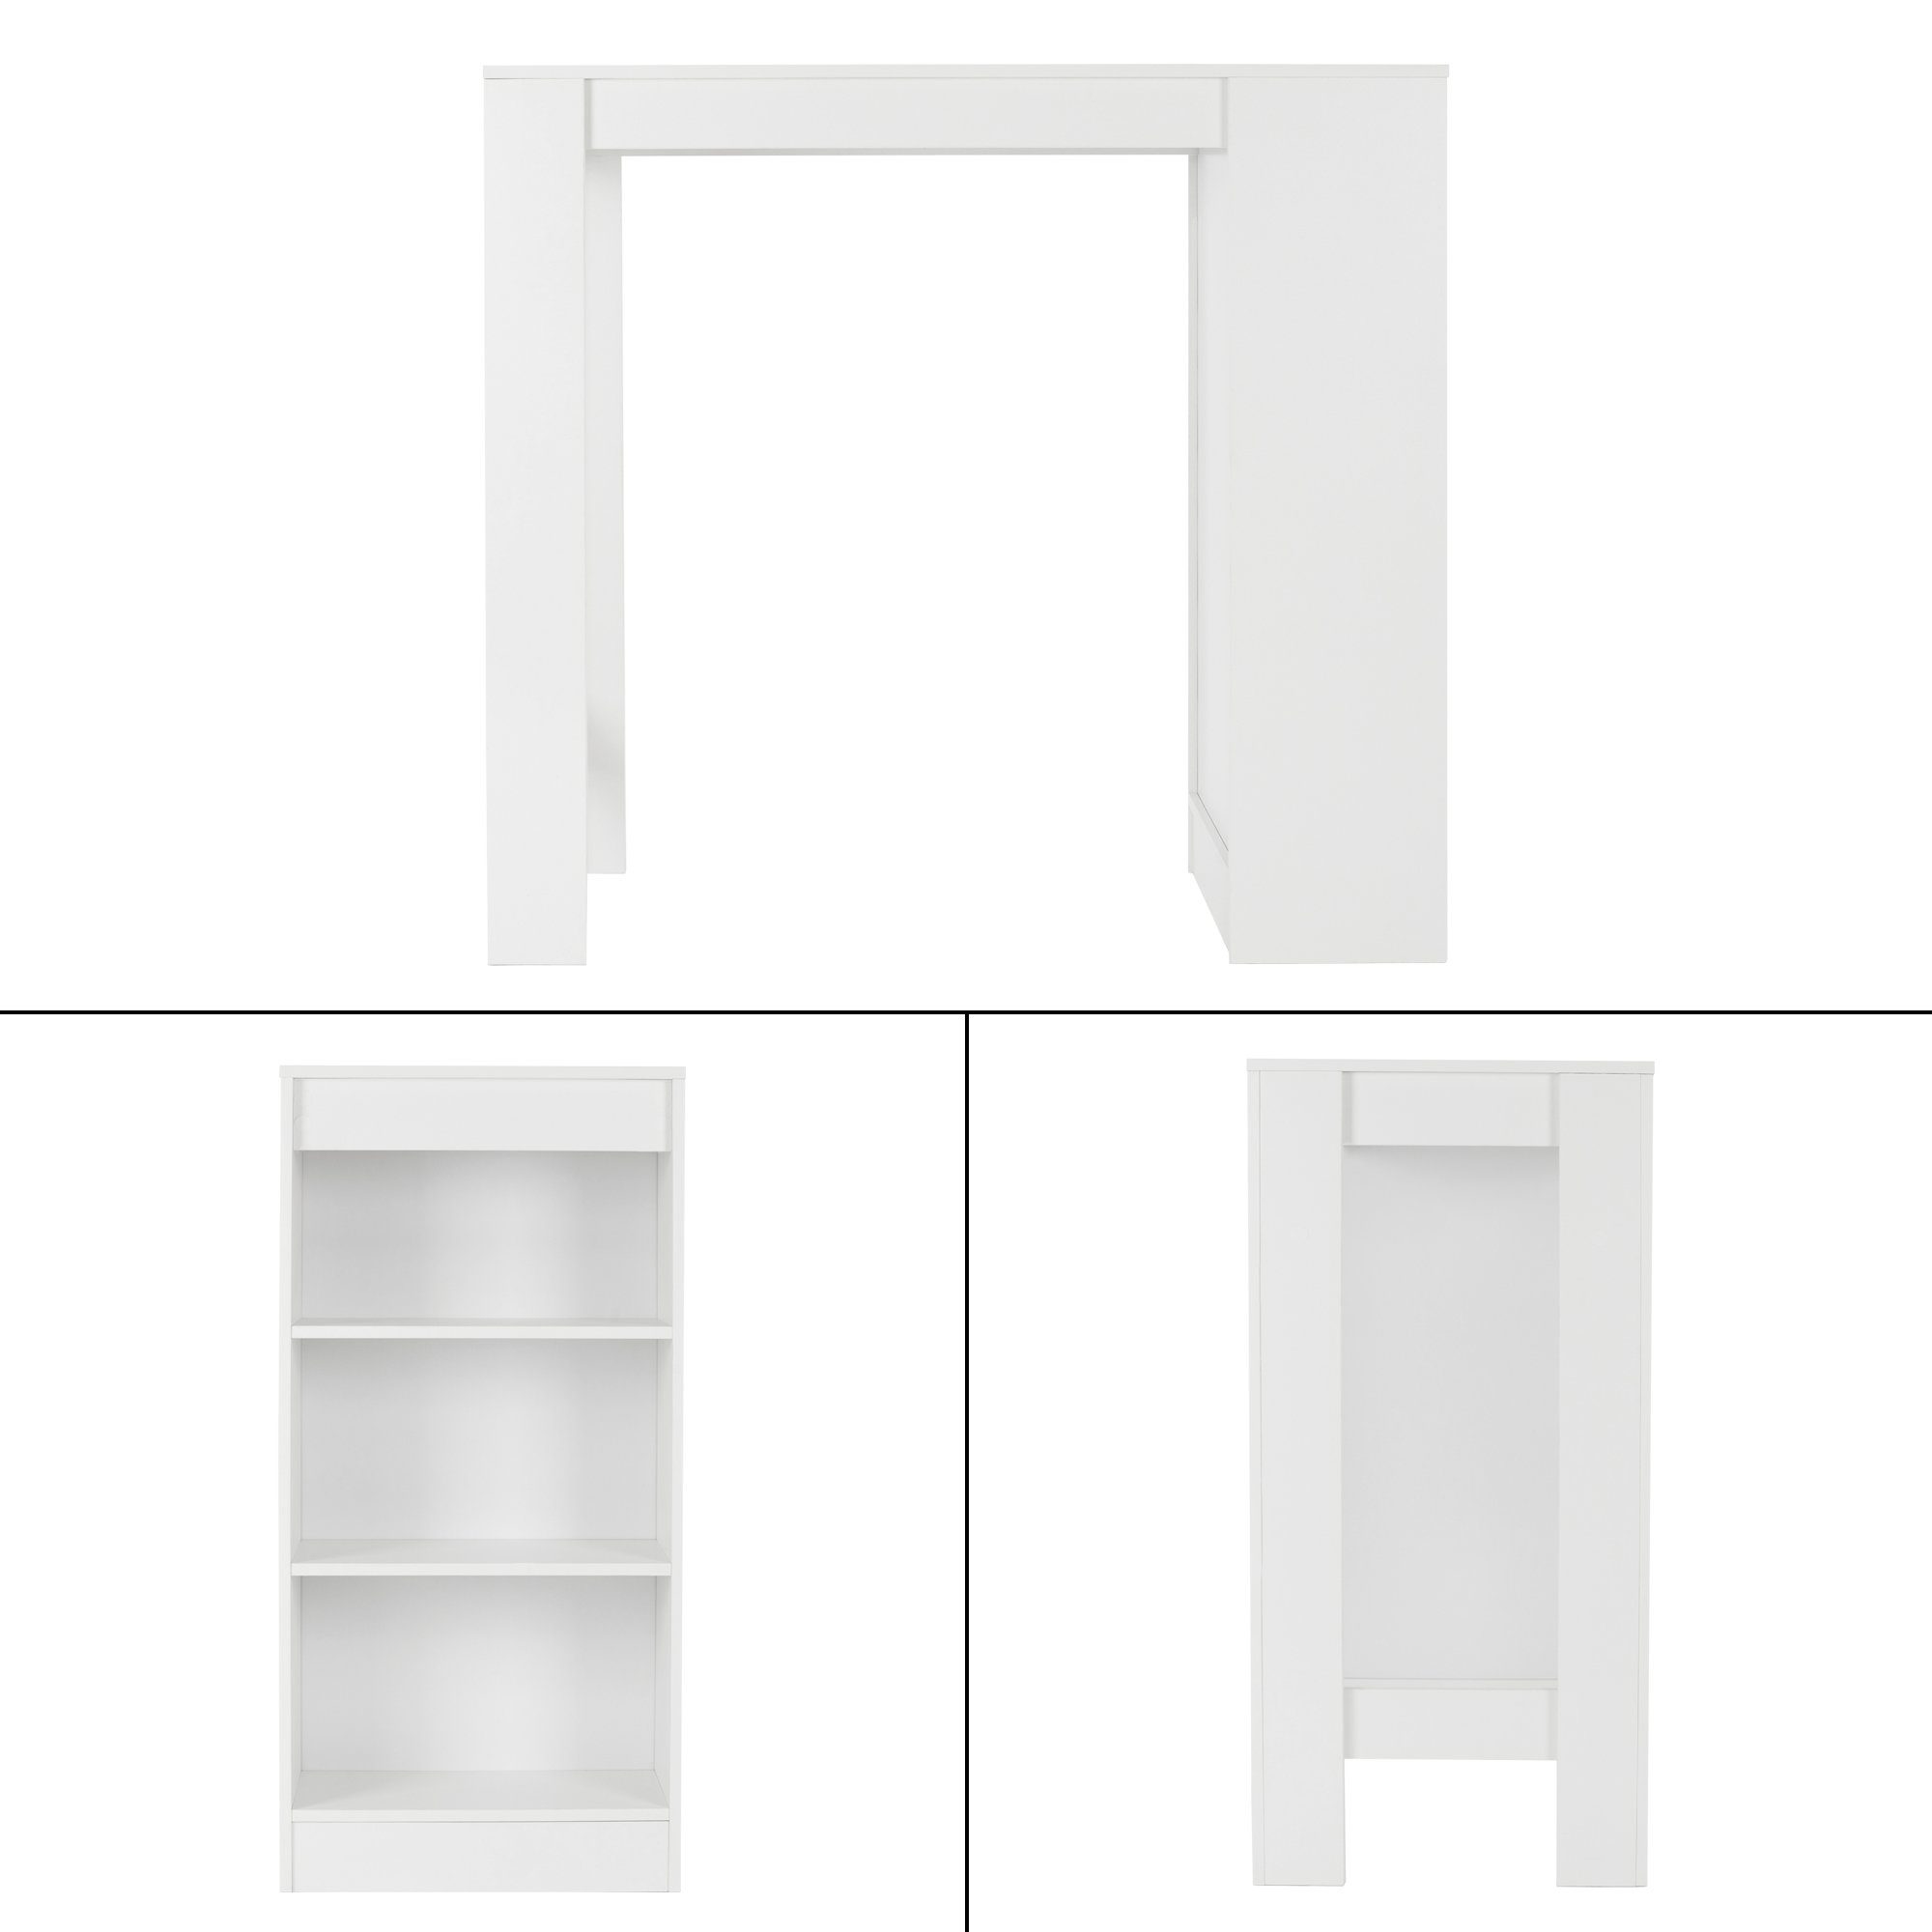 ML-DESIGN Bartisch Ablageflächen modernes Loungetisch, Küchentisch Bartheke Tresentisch Bistrotisch Stehtisch Weiß 110x50x103cm Holz Design